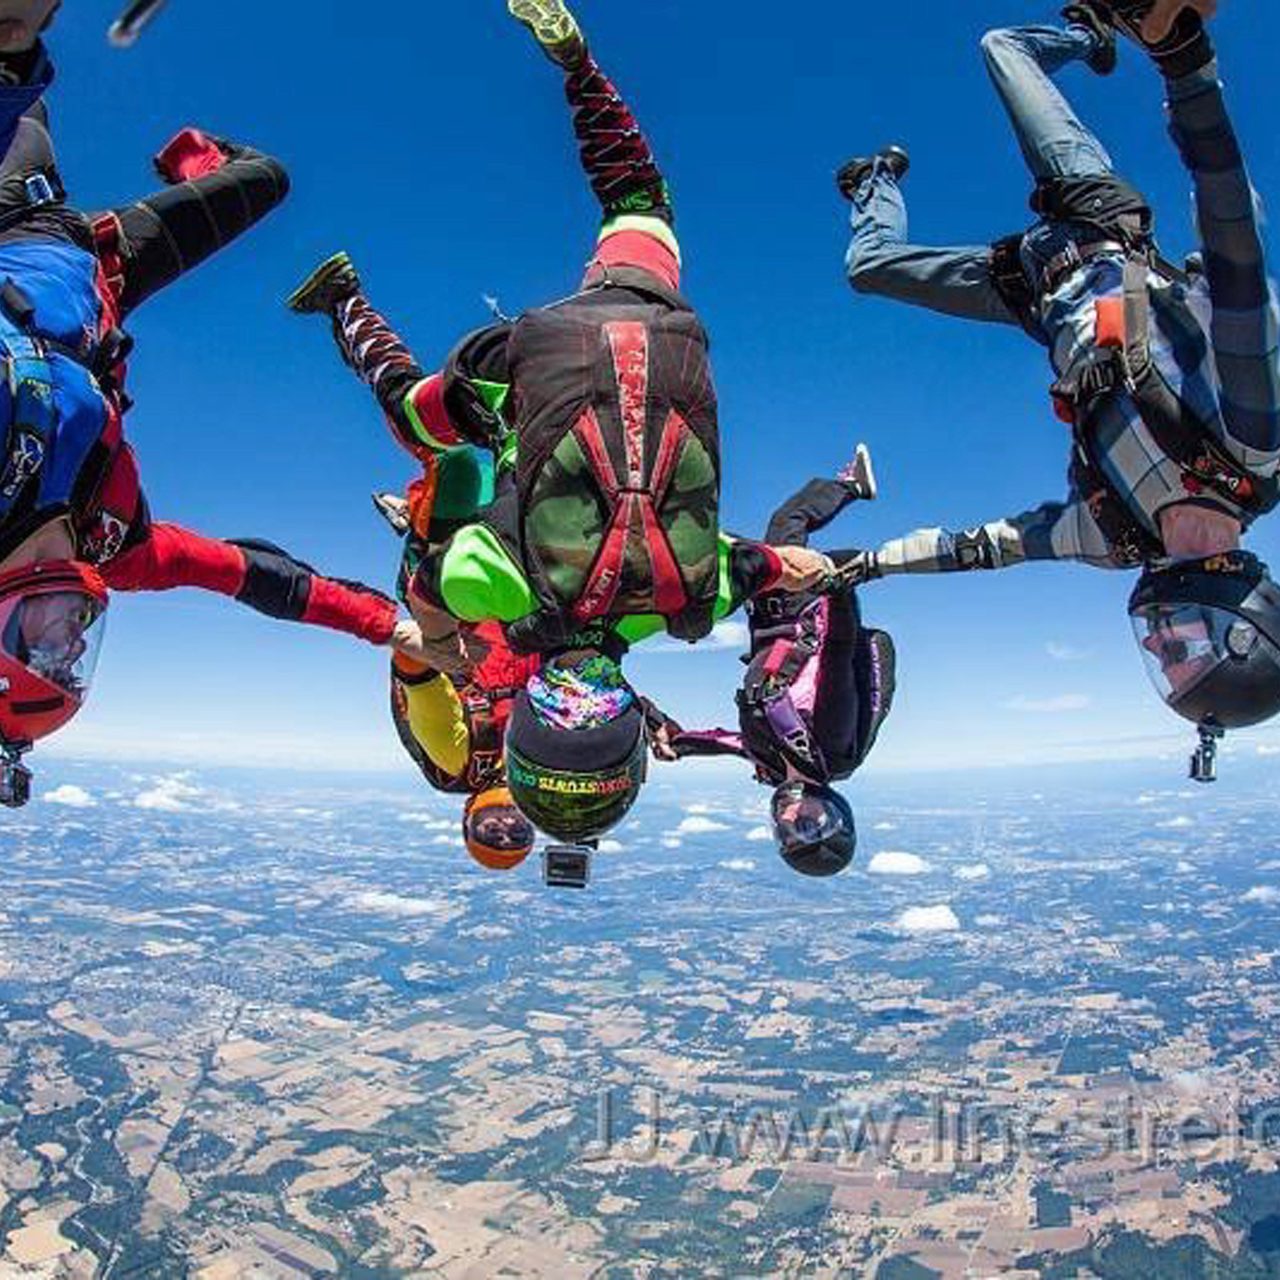 licensed jumpers skydiving head down